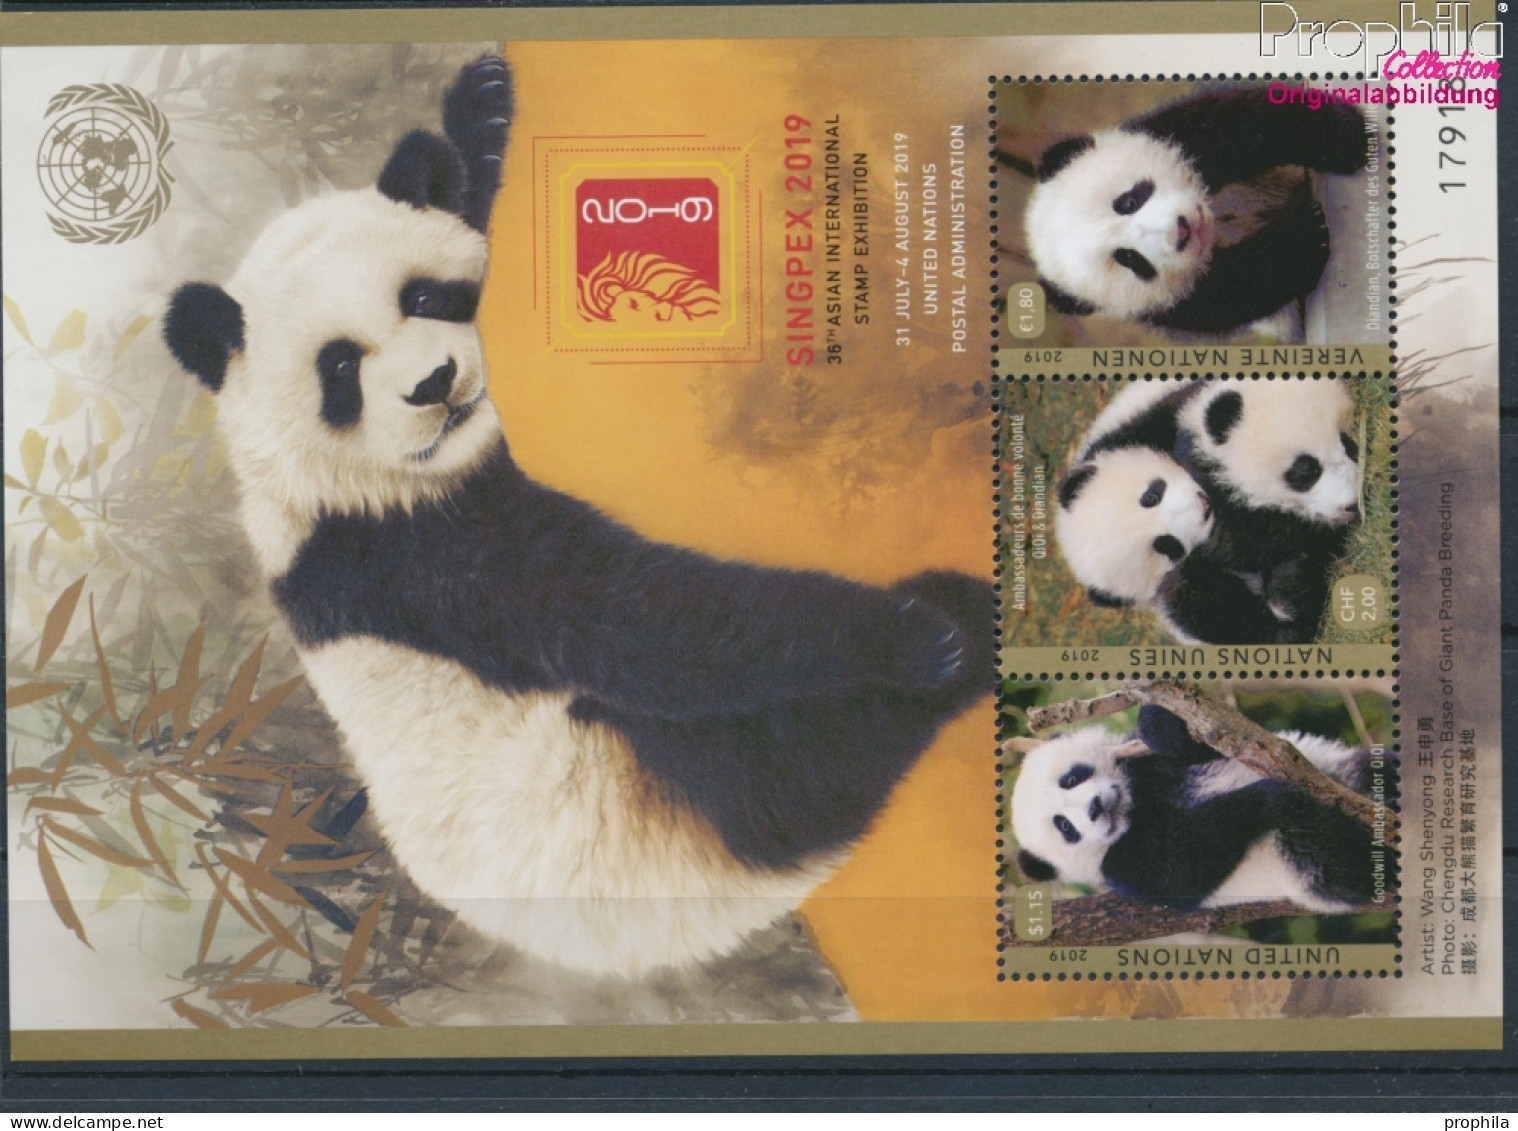 UNO - Genf Block56 (kompl.Ausg.) Postfrisch 2019 Pandabär (10194030 - Unused Stamps